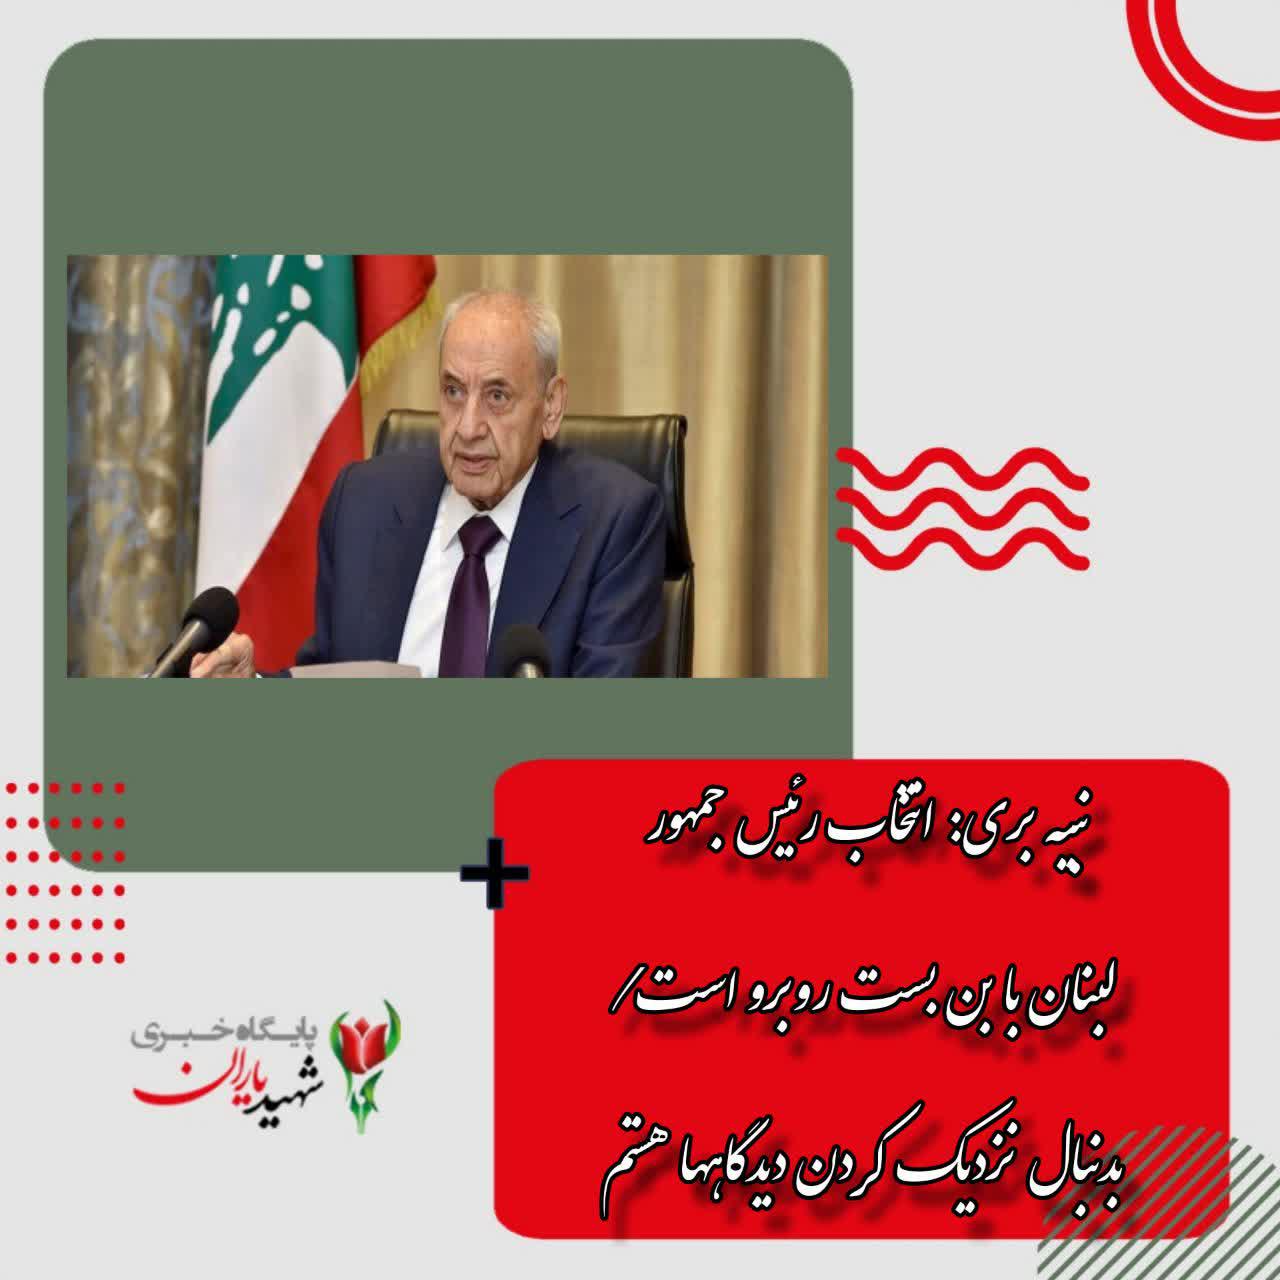 نبیه بری: انتخاب رئیس جمهور لبنان با بن بست روبرو است/ بدنبال نزدیک کردن دیدگاهها هستم